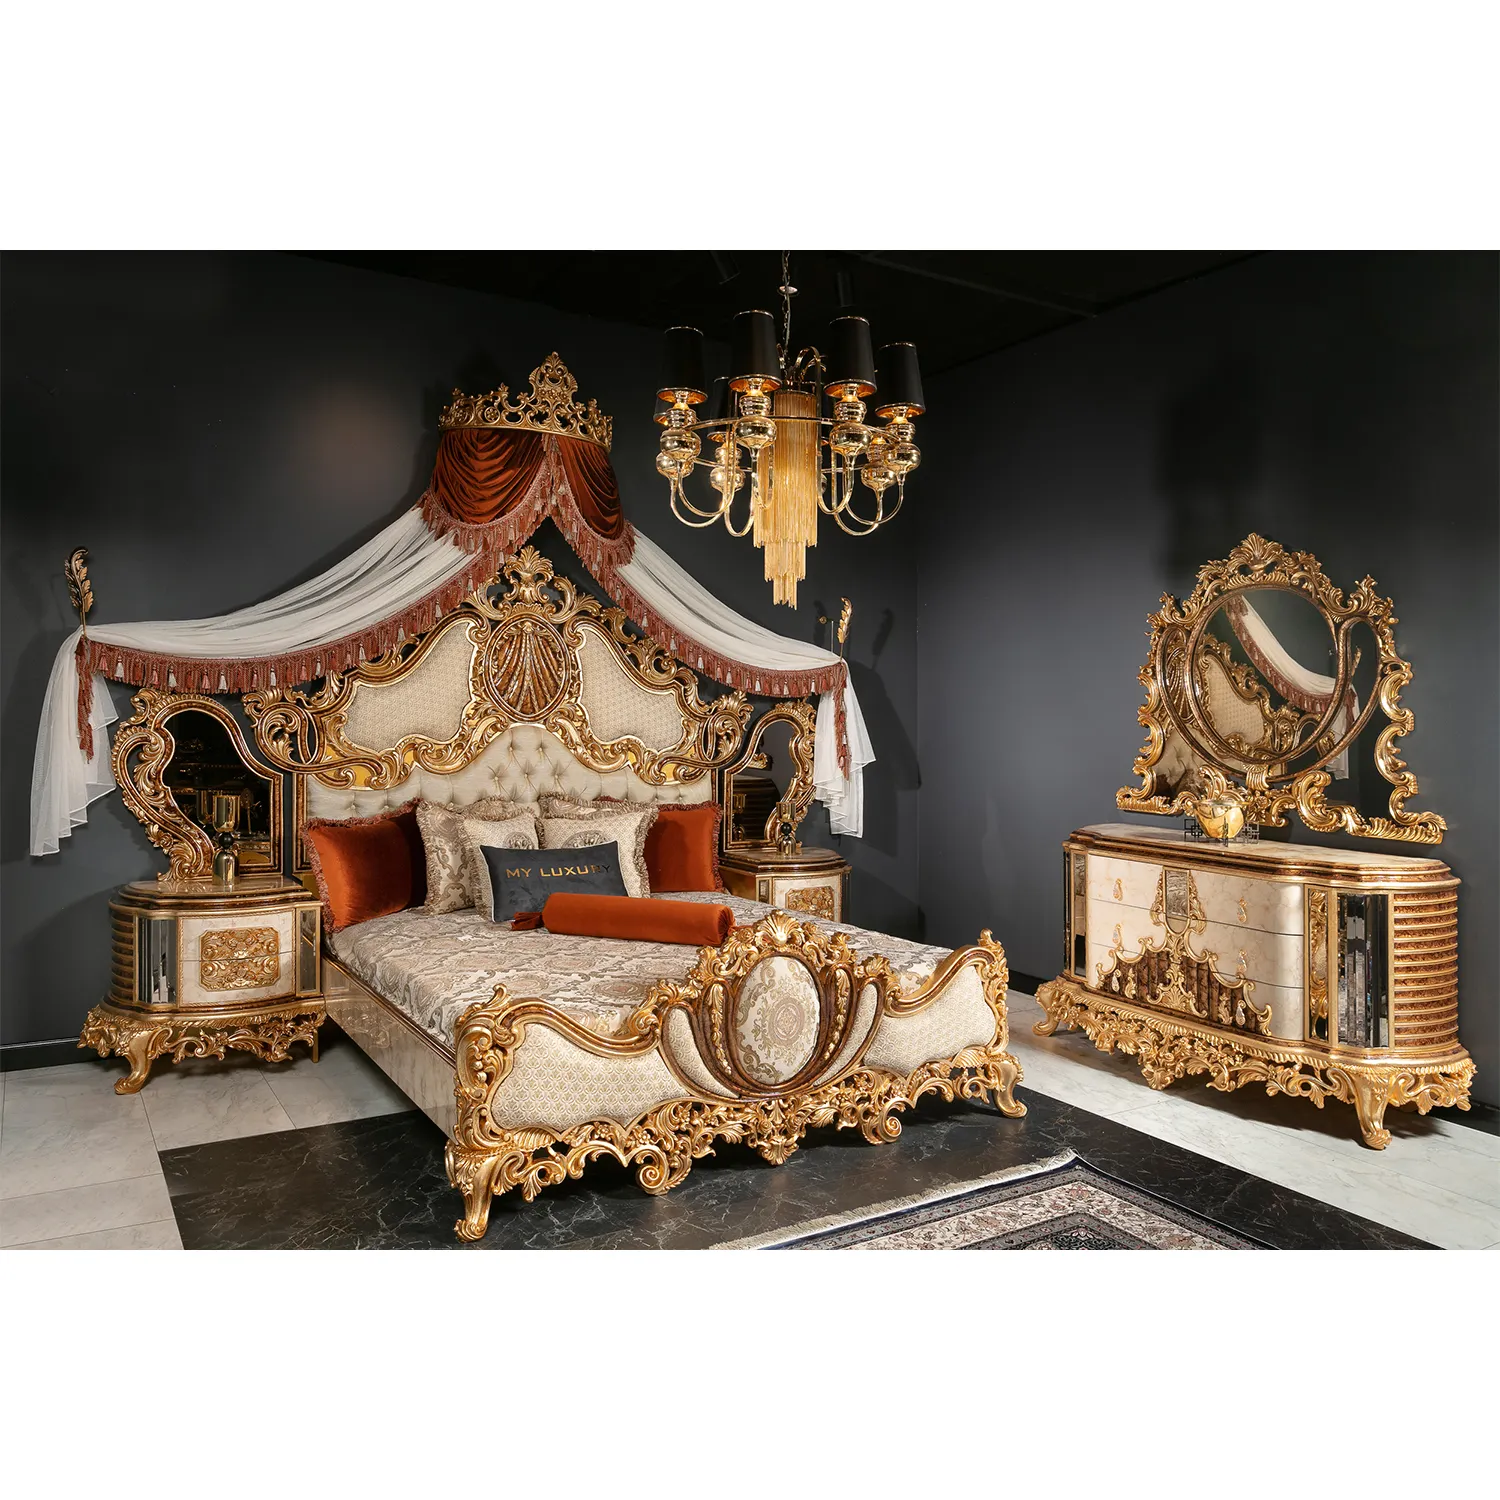 Türk orta doğu doğu lüks antika kraliyet el oyma yatak odası mobilyası klasik Meuble beyaz altın en popüler yatak takımı